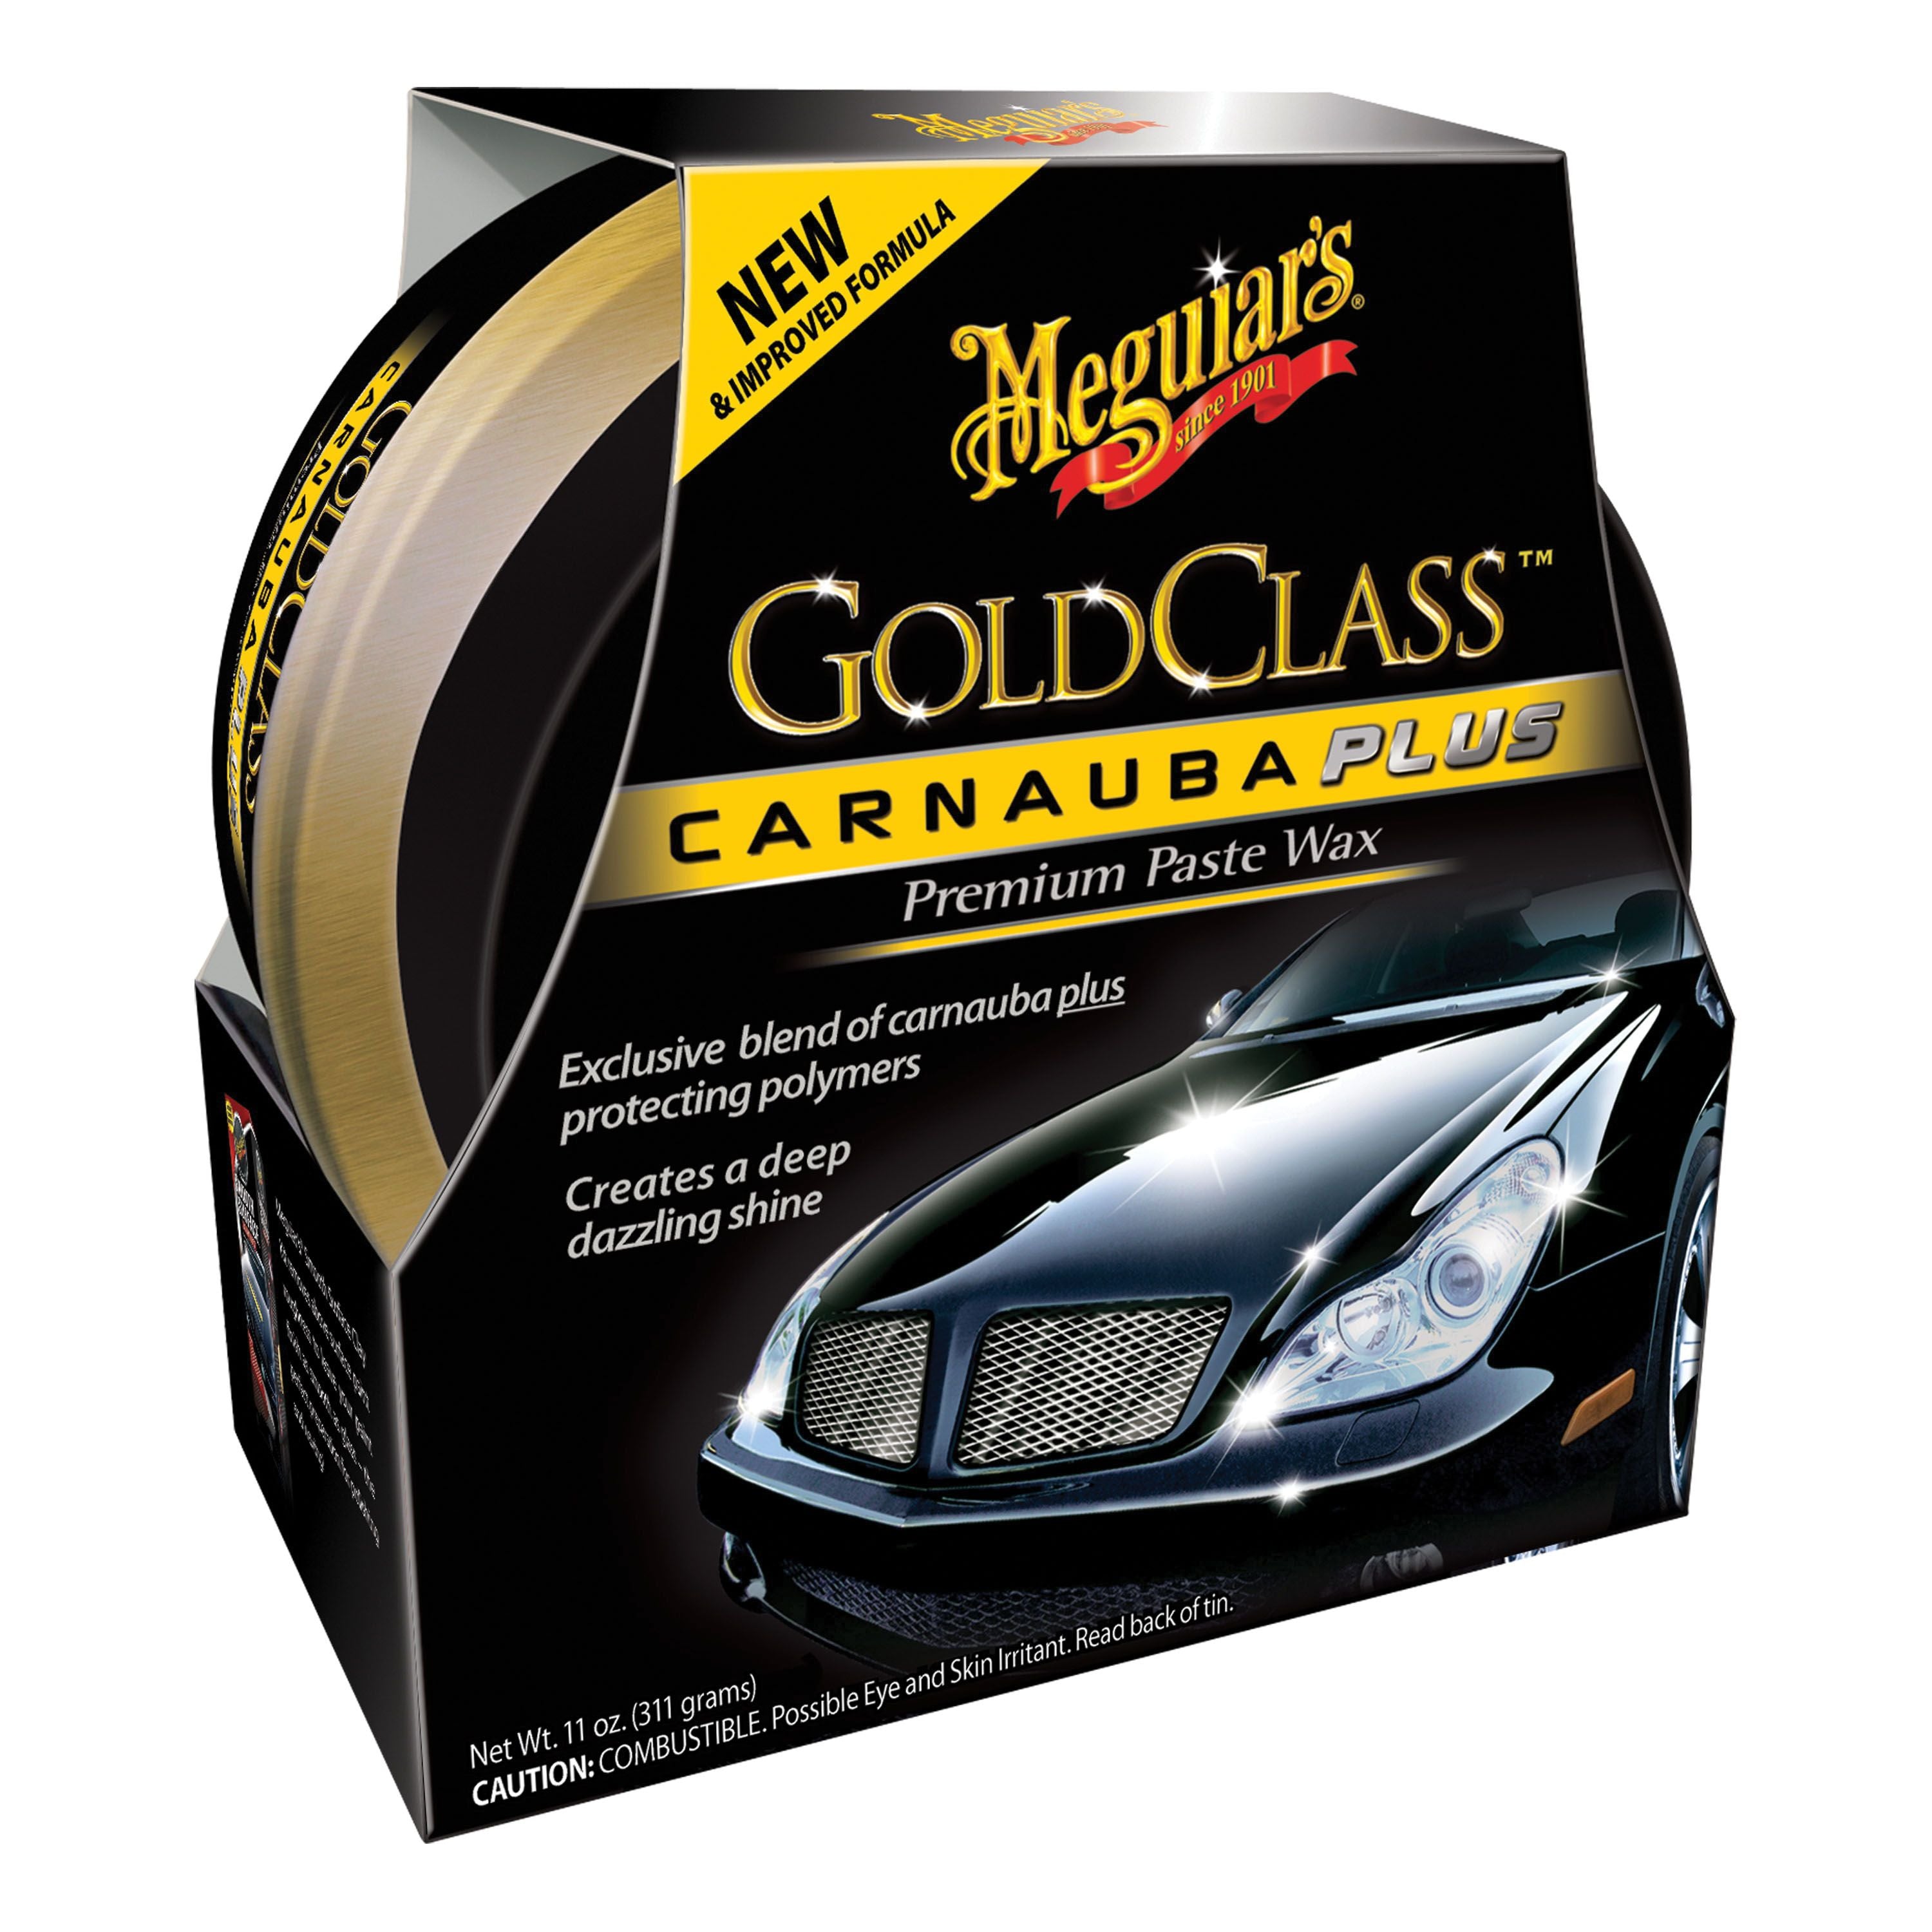 Meguiar's G7716 - Gold Class Quik Wax